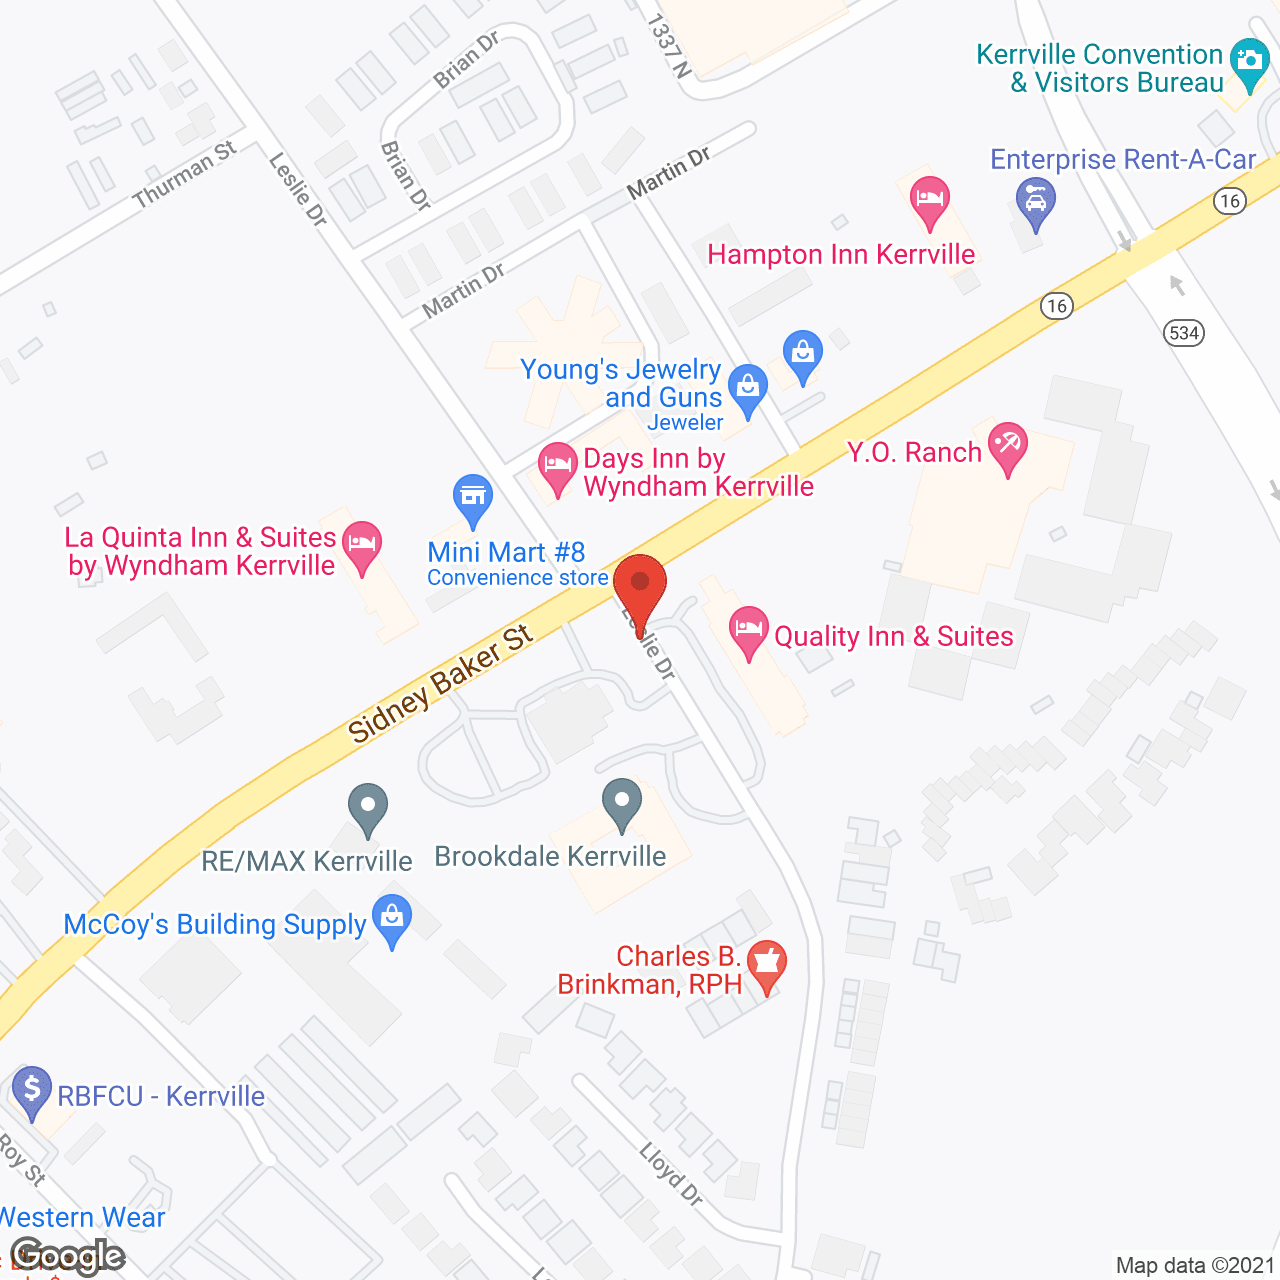 Brookdale Kerrville in google map